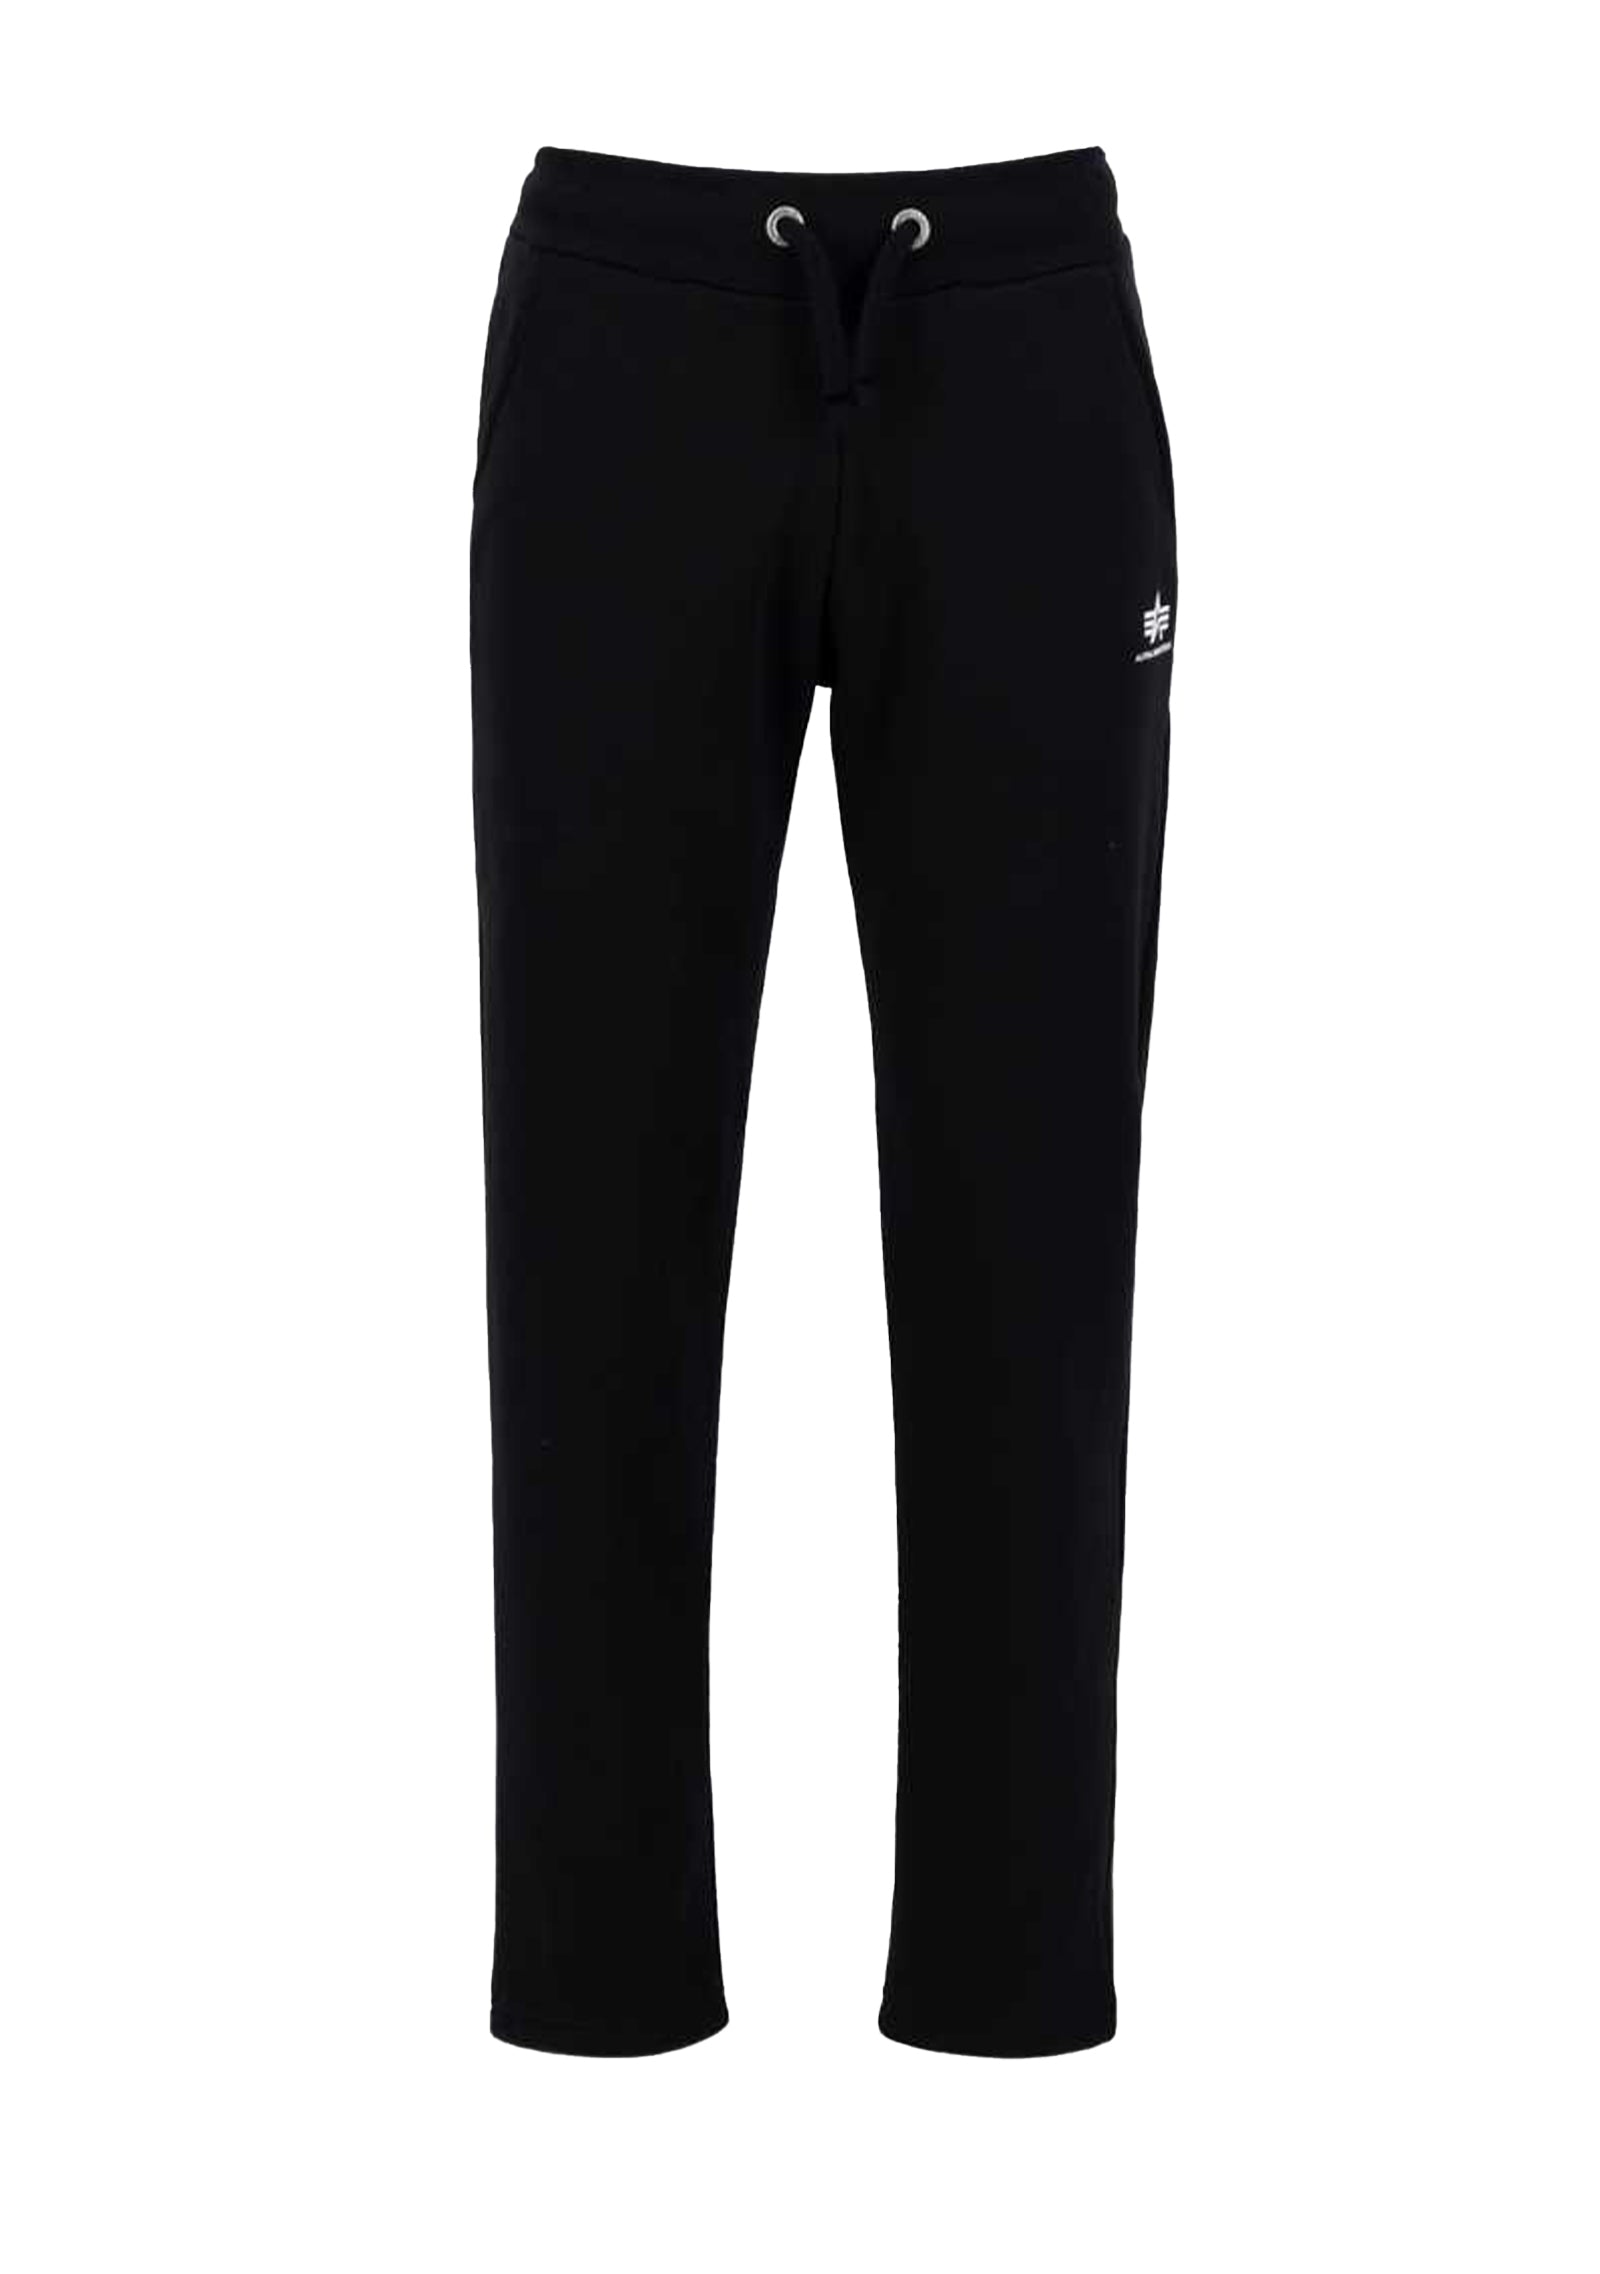 Pantaloni Basic Jogger SL S Leg Black